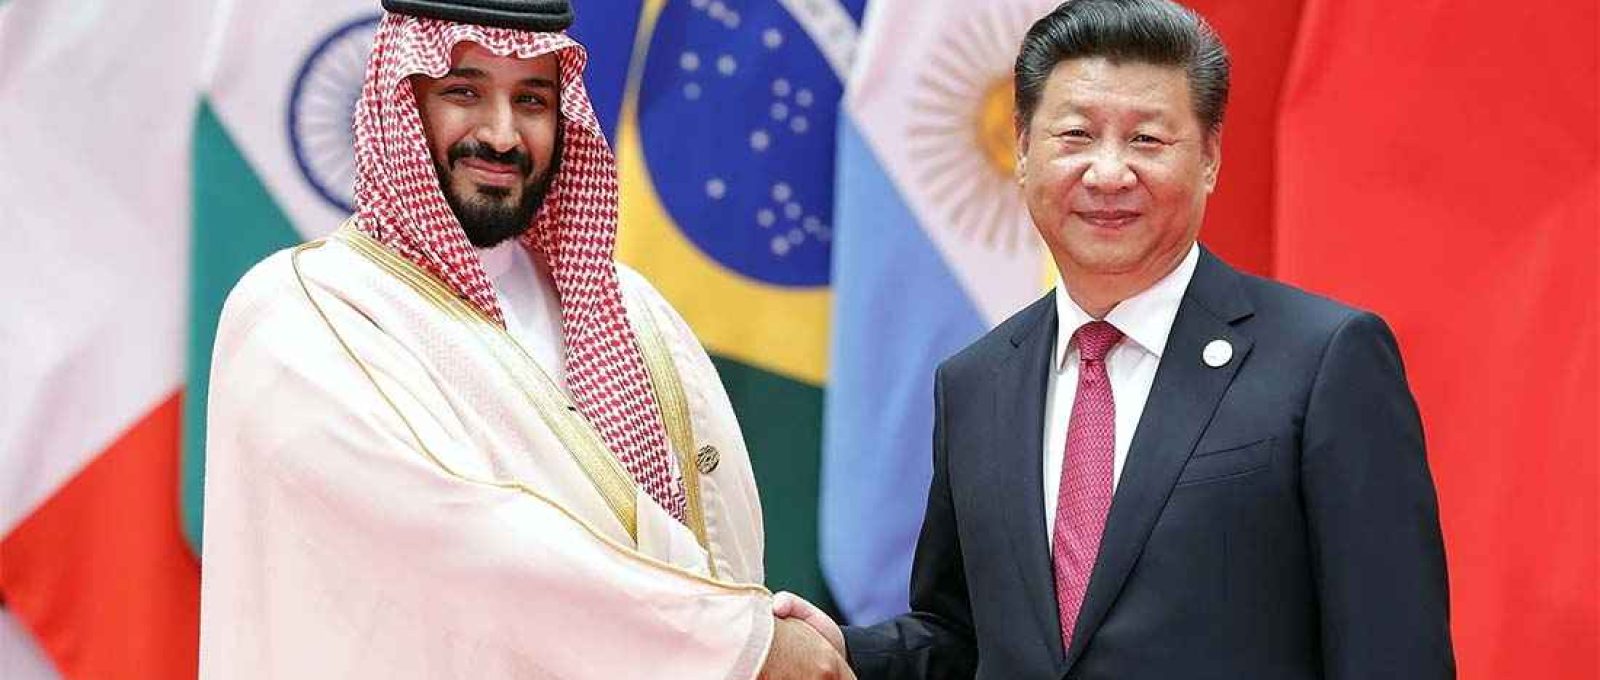 O presidente chinês Xi Jinping (à direita) cumprimenta o príncipe herdeiro saudita Mohammed bin Salman na Cúpula do G20 em 4 de setembro de 2016 em Hangzhou, China (Lintao Zhang/Getty Images).